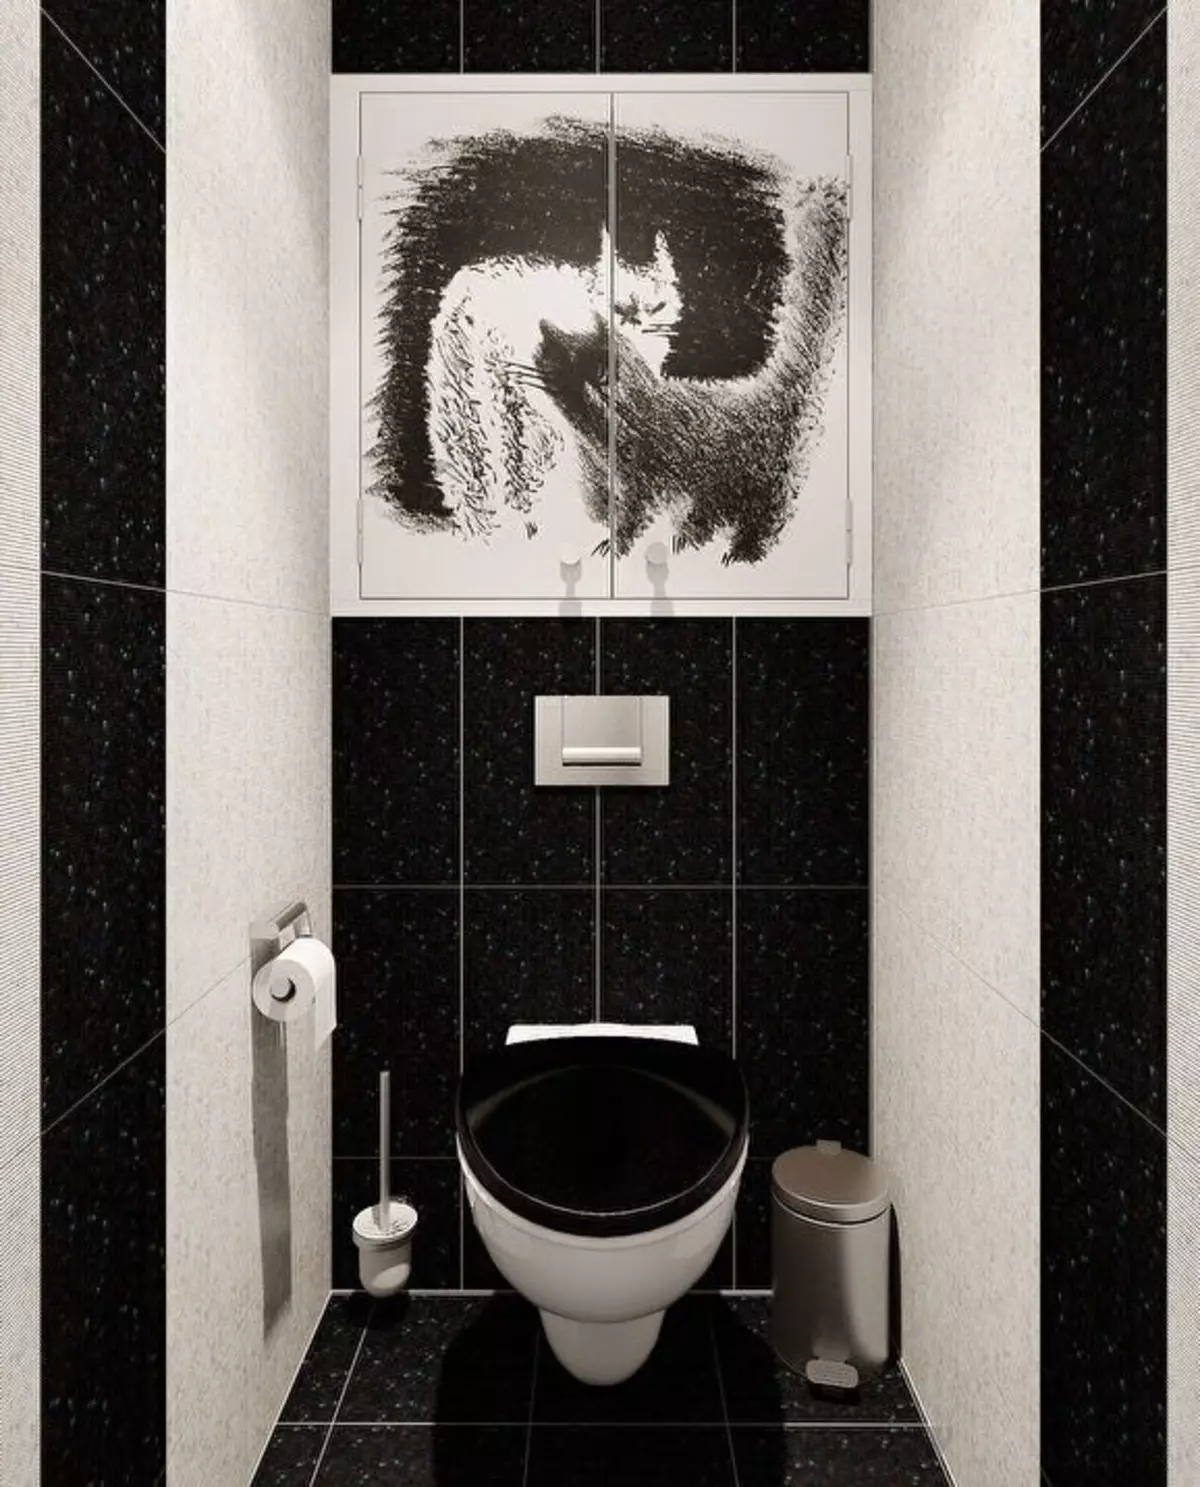 ห้องน้ำสีดำ (67 รูป): การออกแบบห้องน้ำในสีดำและสีขาวการเลือกห้องน้ำสีเข้มในอพาร์ตเมนต์ตกแต่งด้วยกระเบื้องสีดำและสีแดง 10501_30